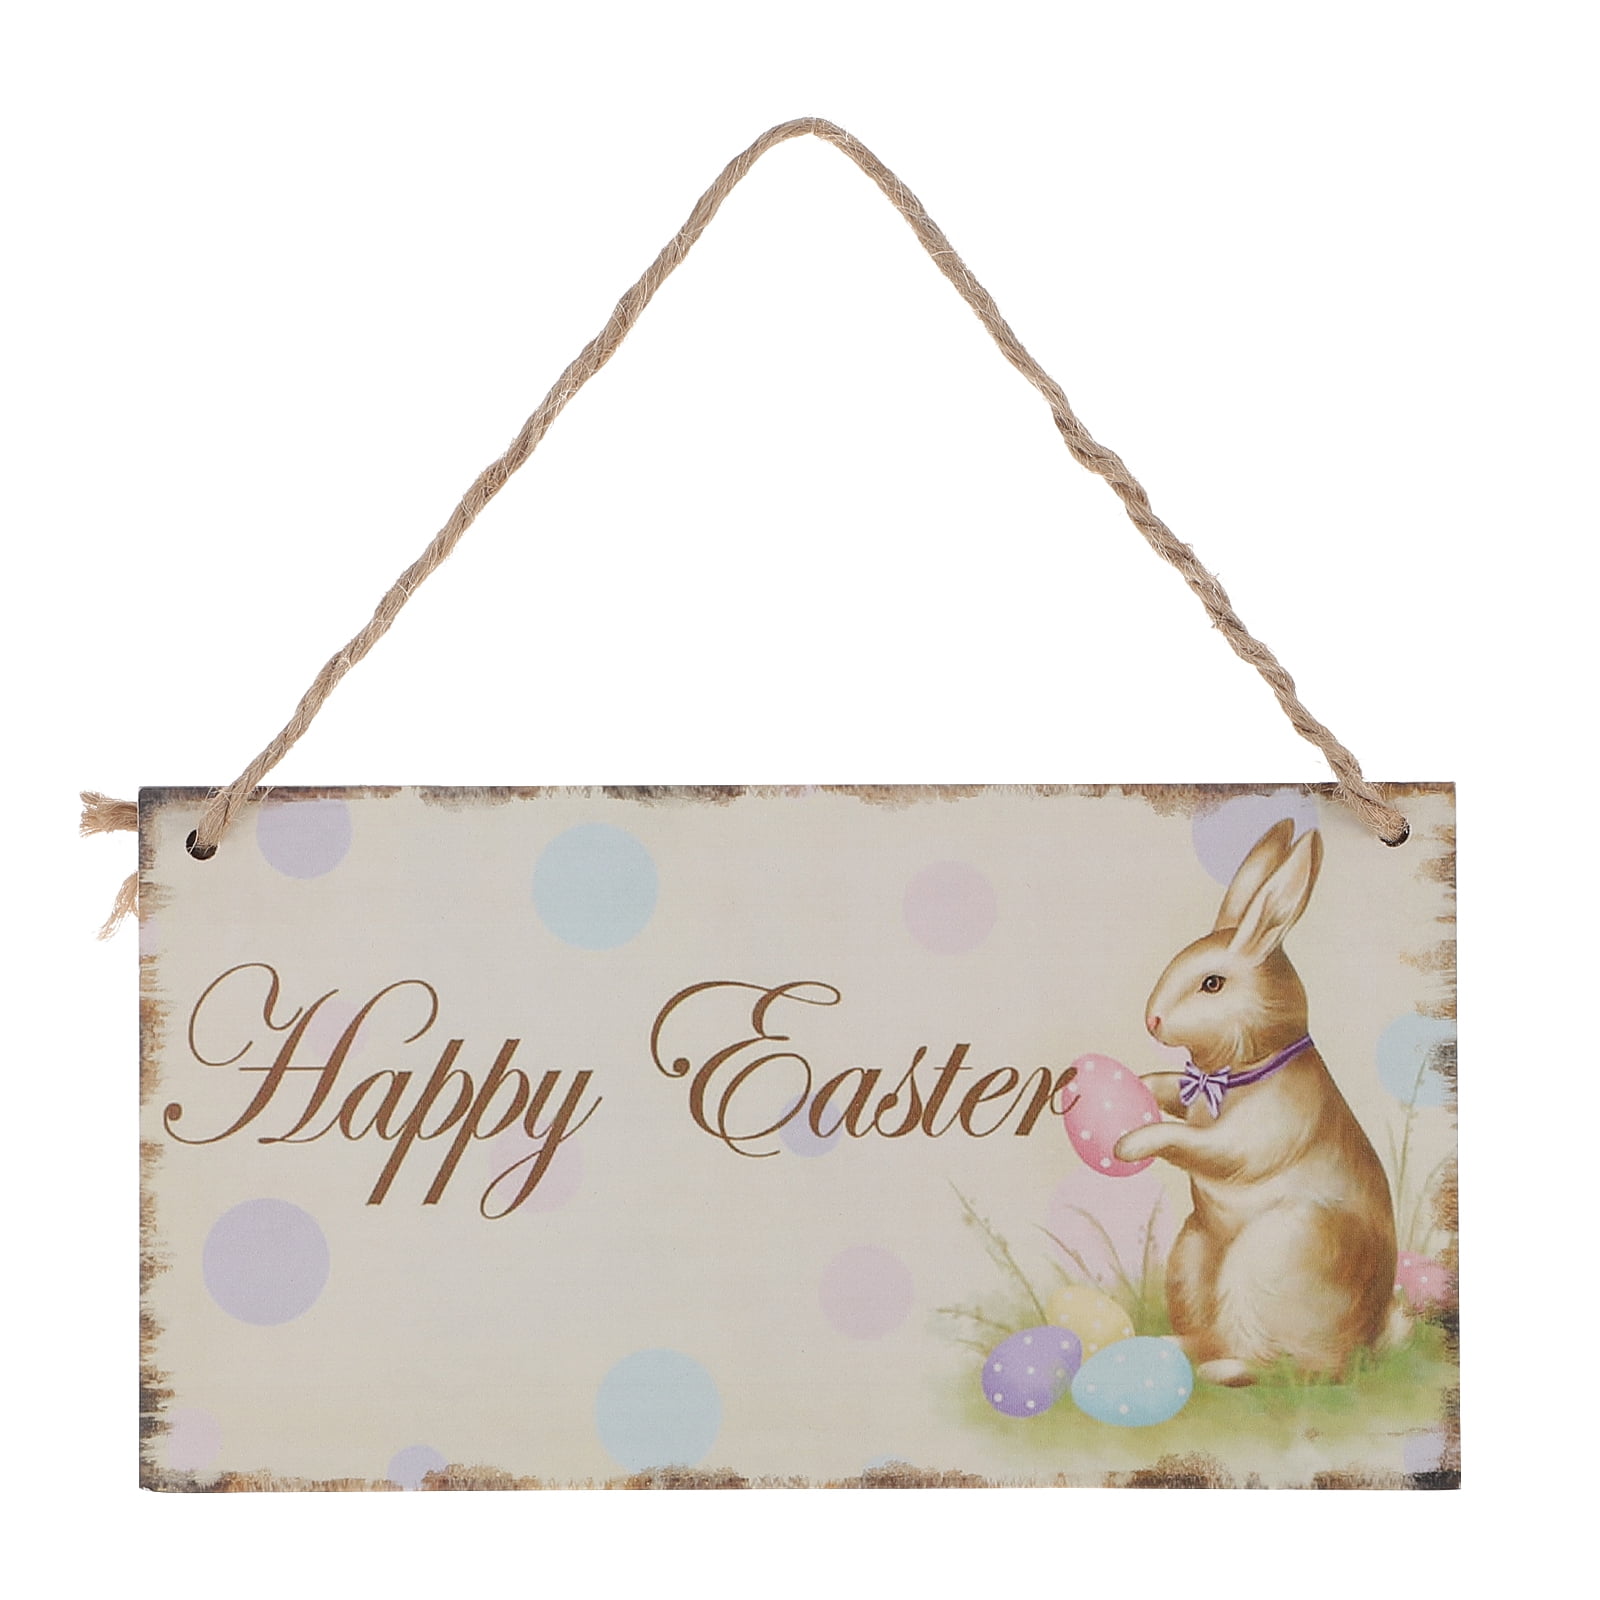 U PICK Welcome EASTER Spring FRIENDS Wood Wall Door HANGING Plaque Flowers Bunny 